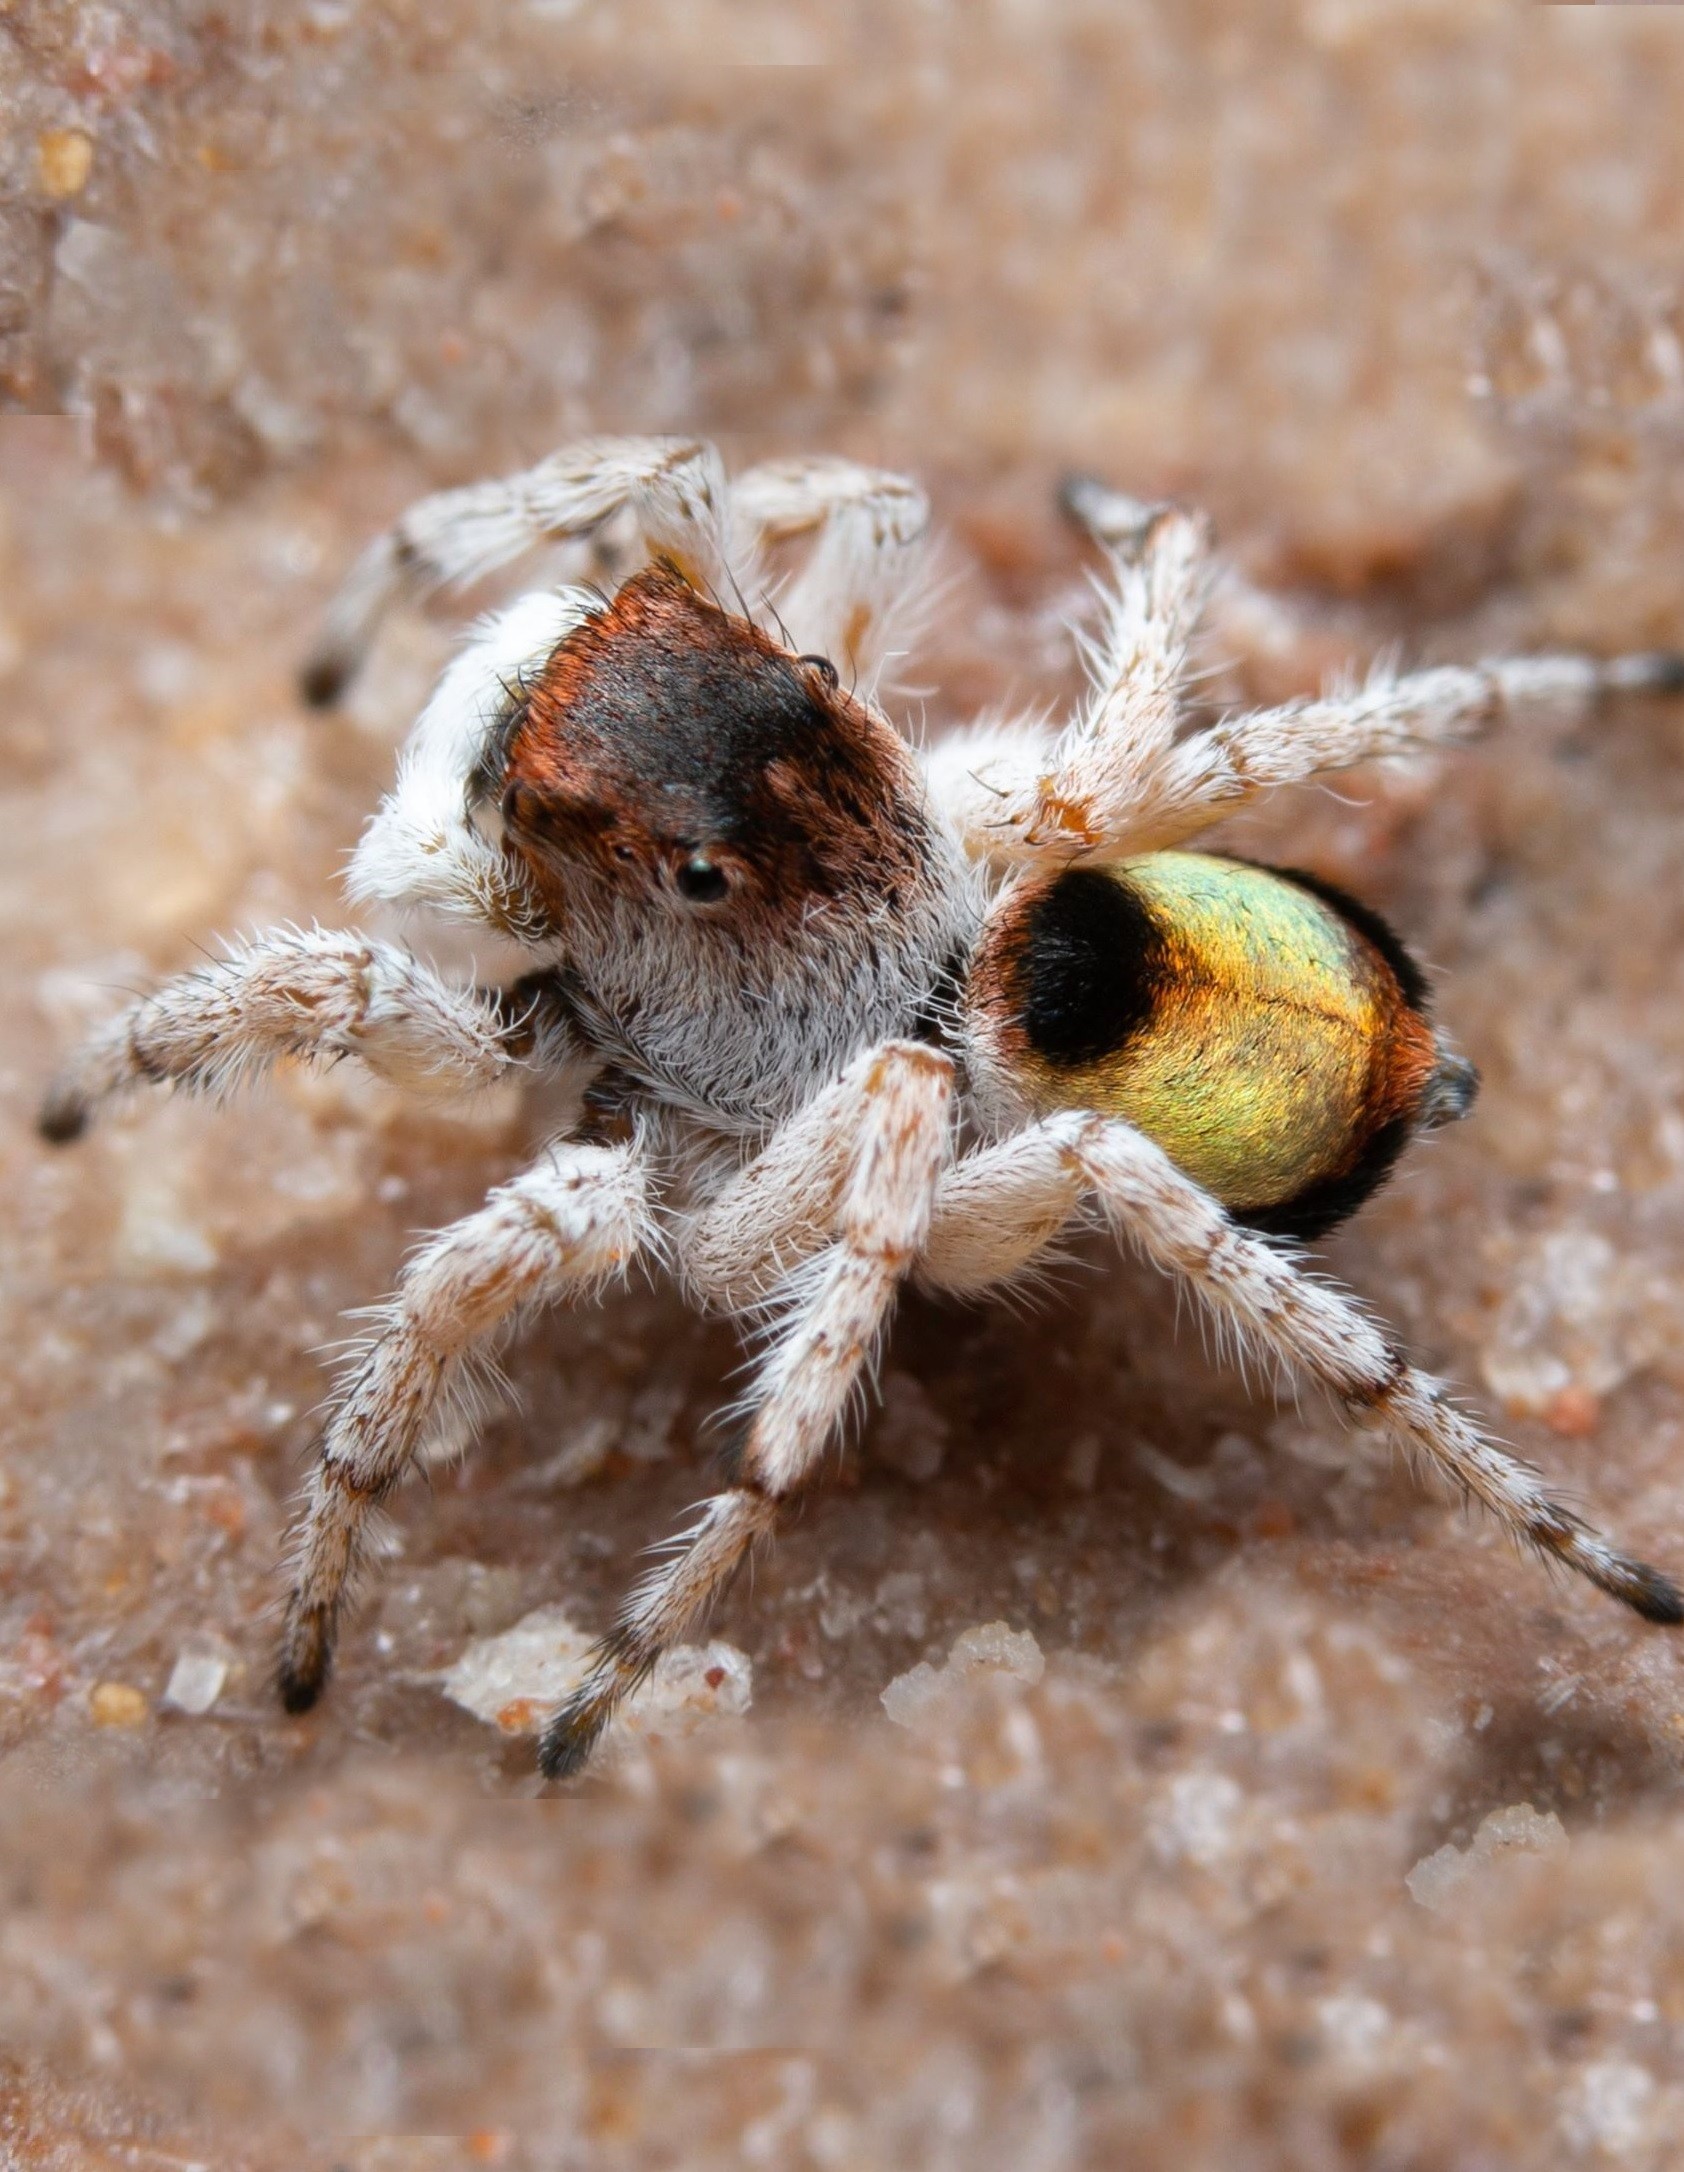 Aranha da espécie Maratus volpei, descoberta na Austrália (Foto: Divulgação/Museums Victoria)